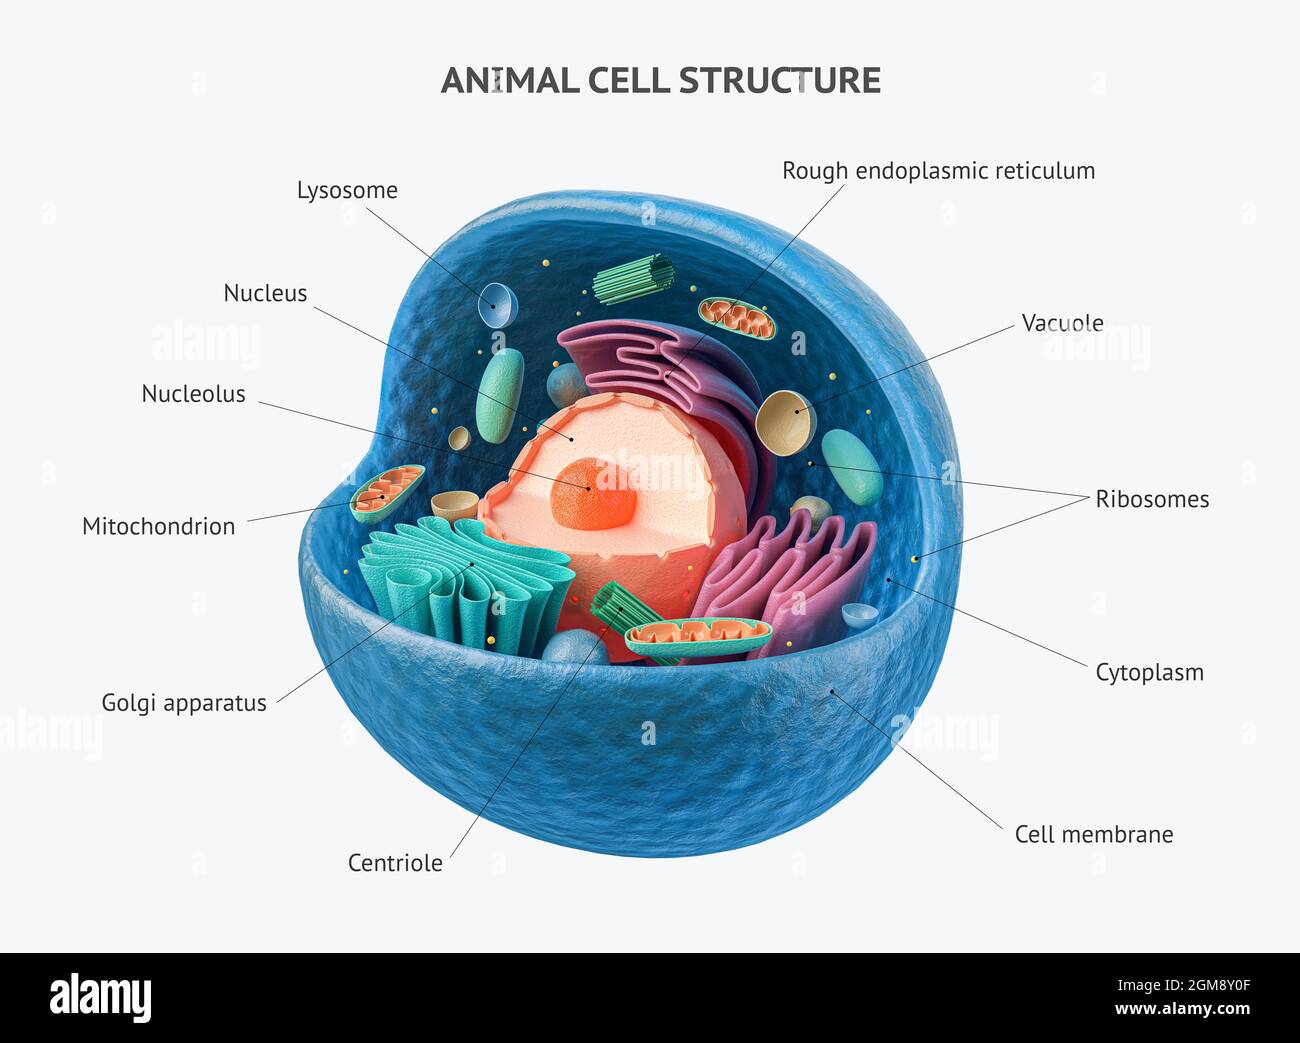 rendu 3d de cellules animales biologiques avec section transversale d'organelles isolée sur blanc. Cellule animale avec annotations de texte placées sur tous les organites Banque D'Images